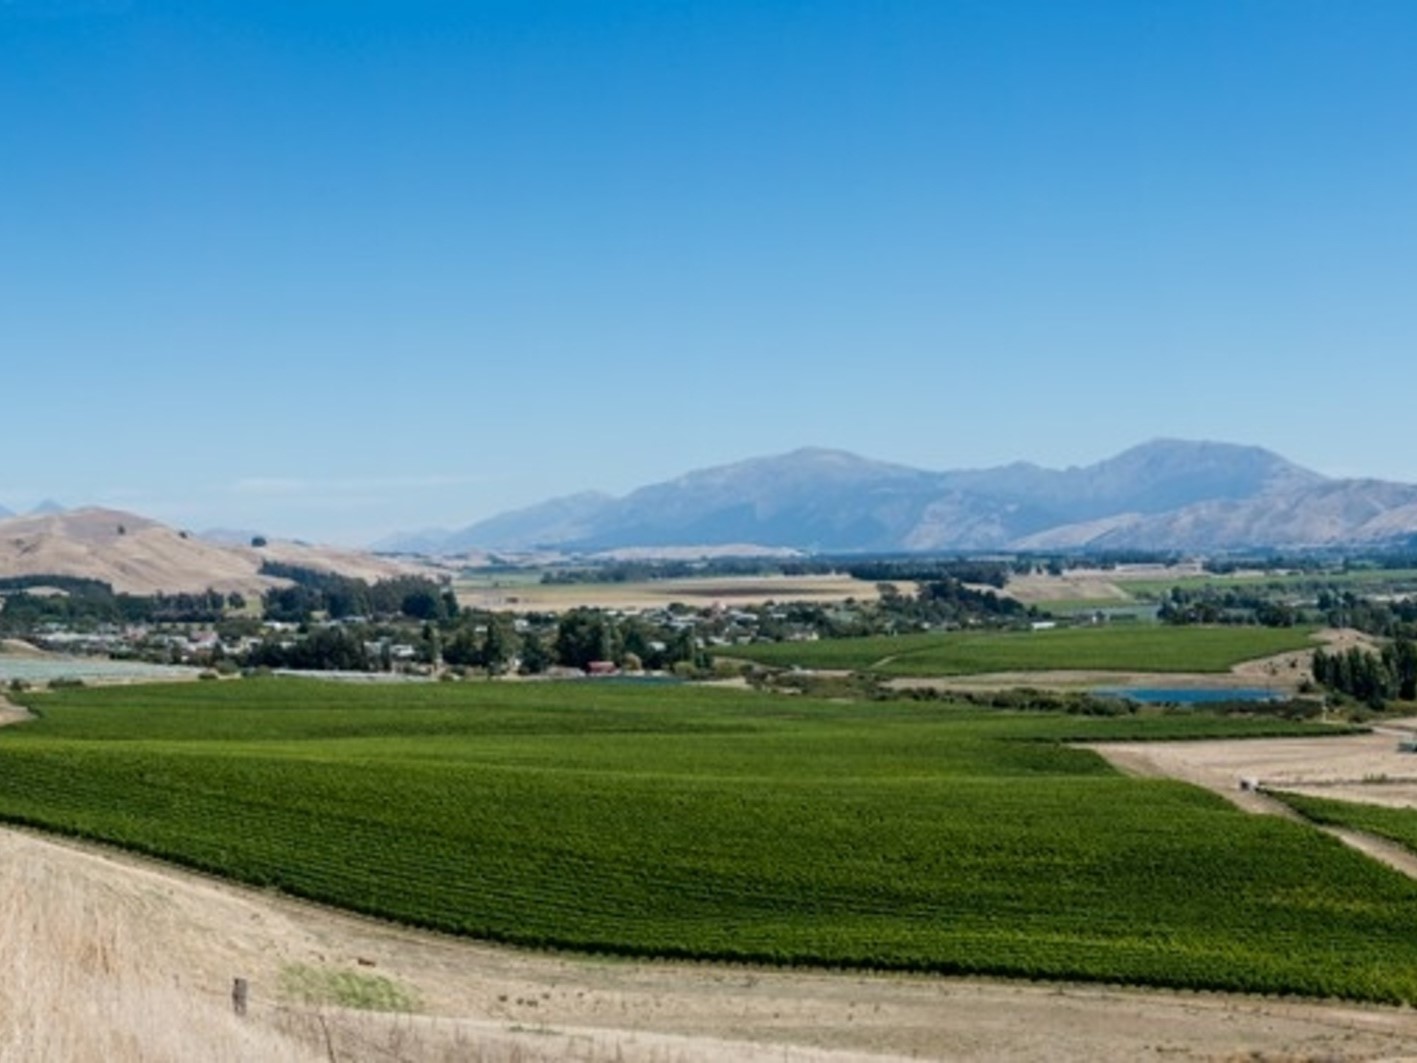 Vineyard in New Zealand